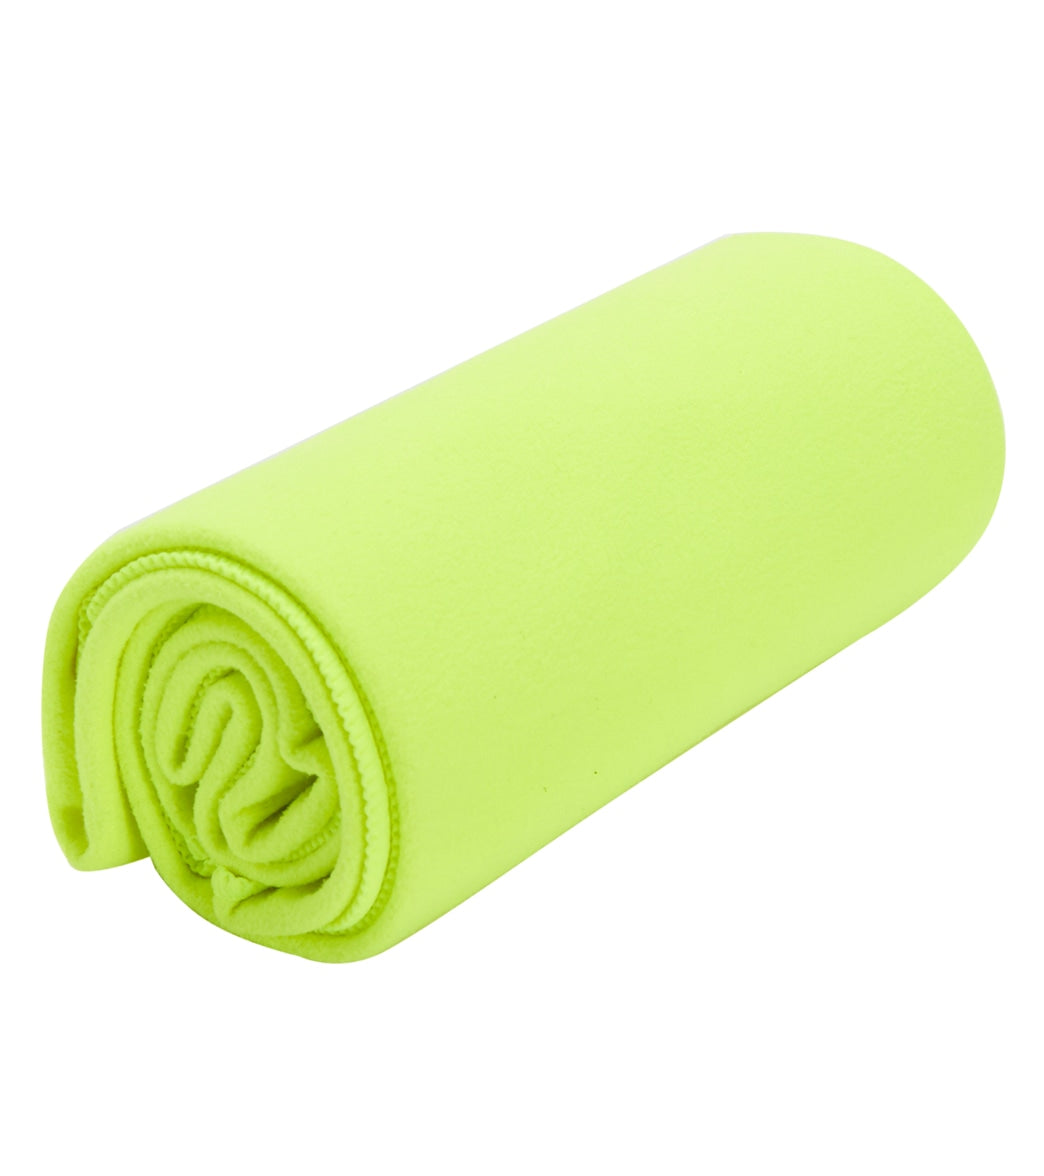 Alo Yoga Strap - Highlighter